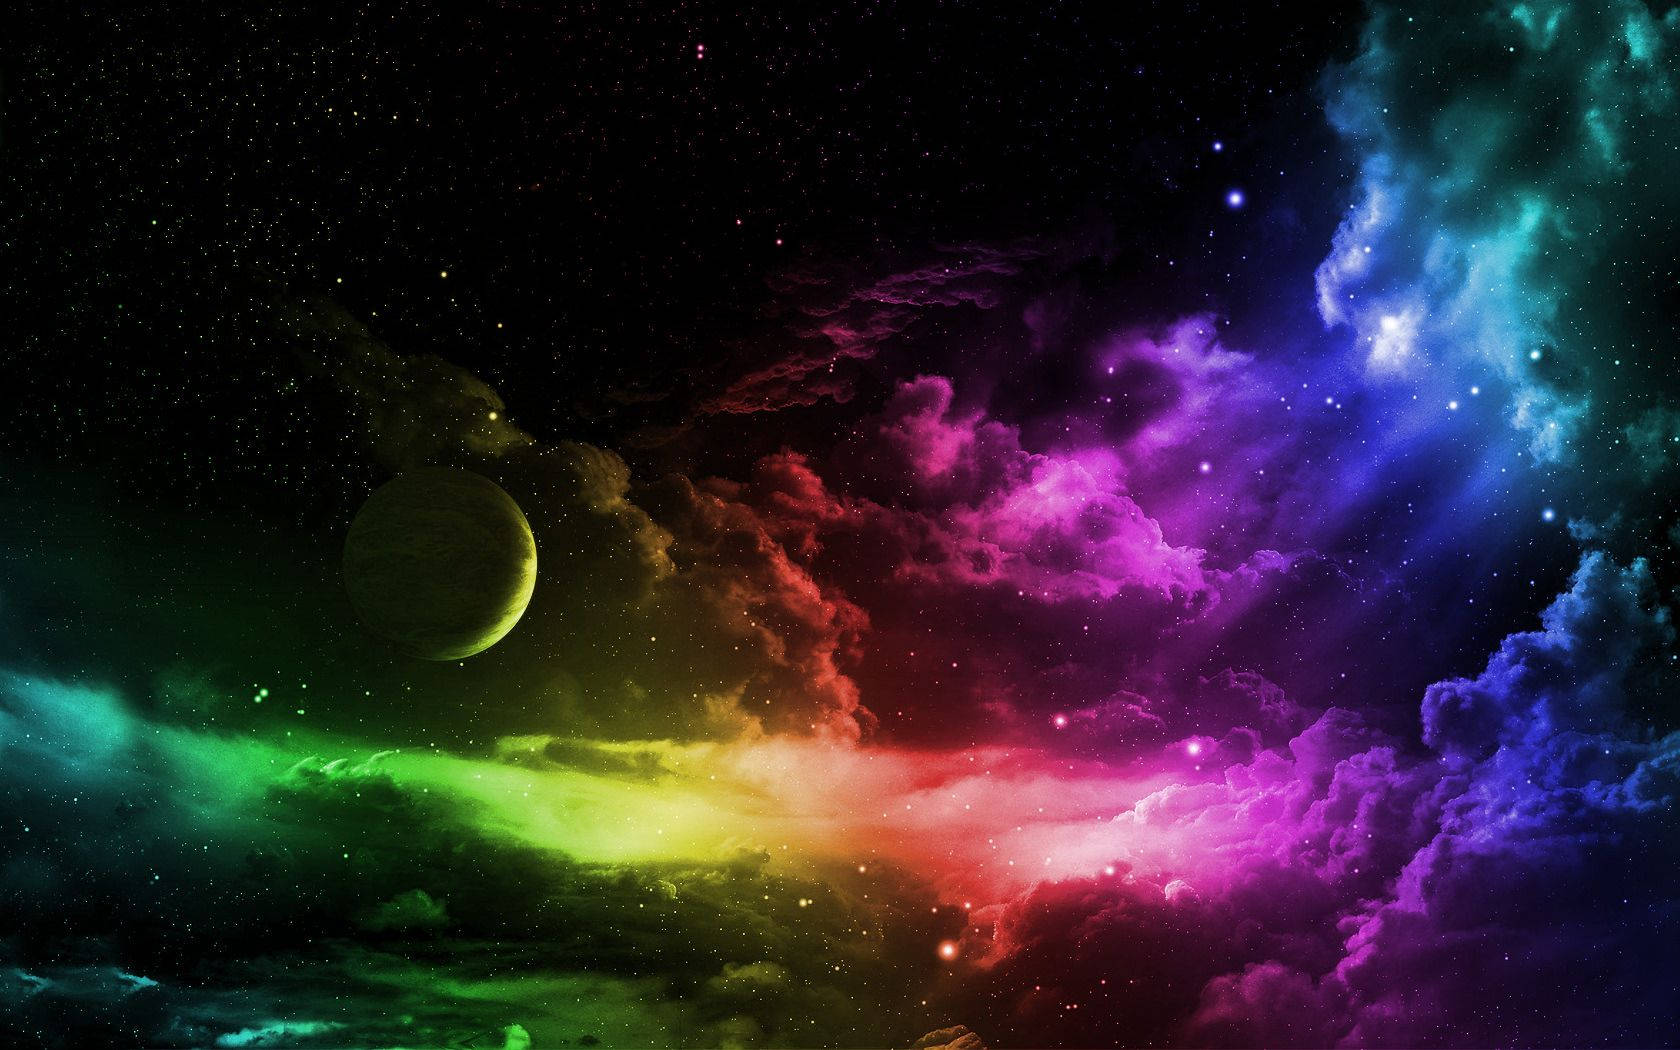 En planet under skyerne af en farverig galakse. Wallpaper